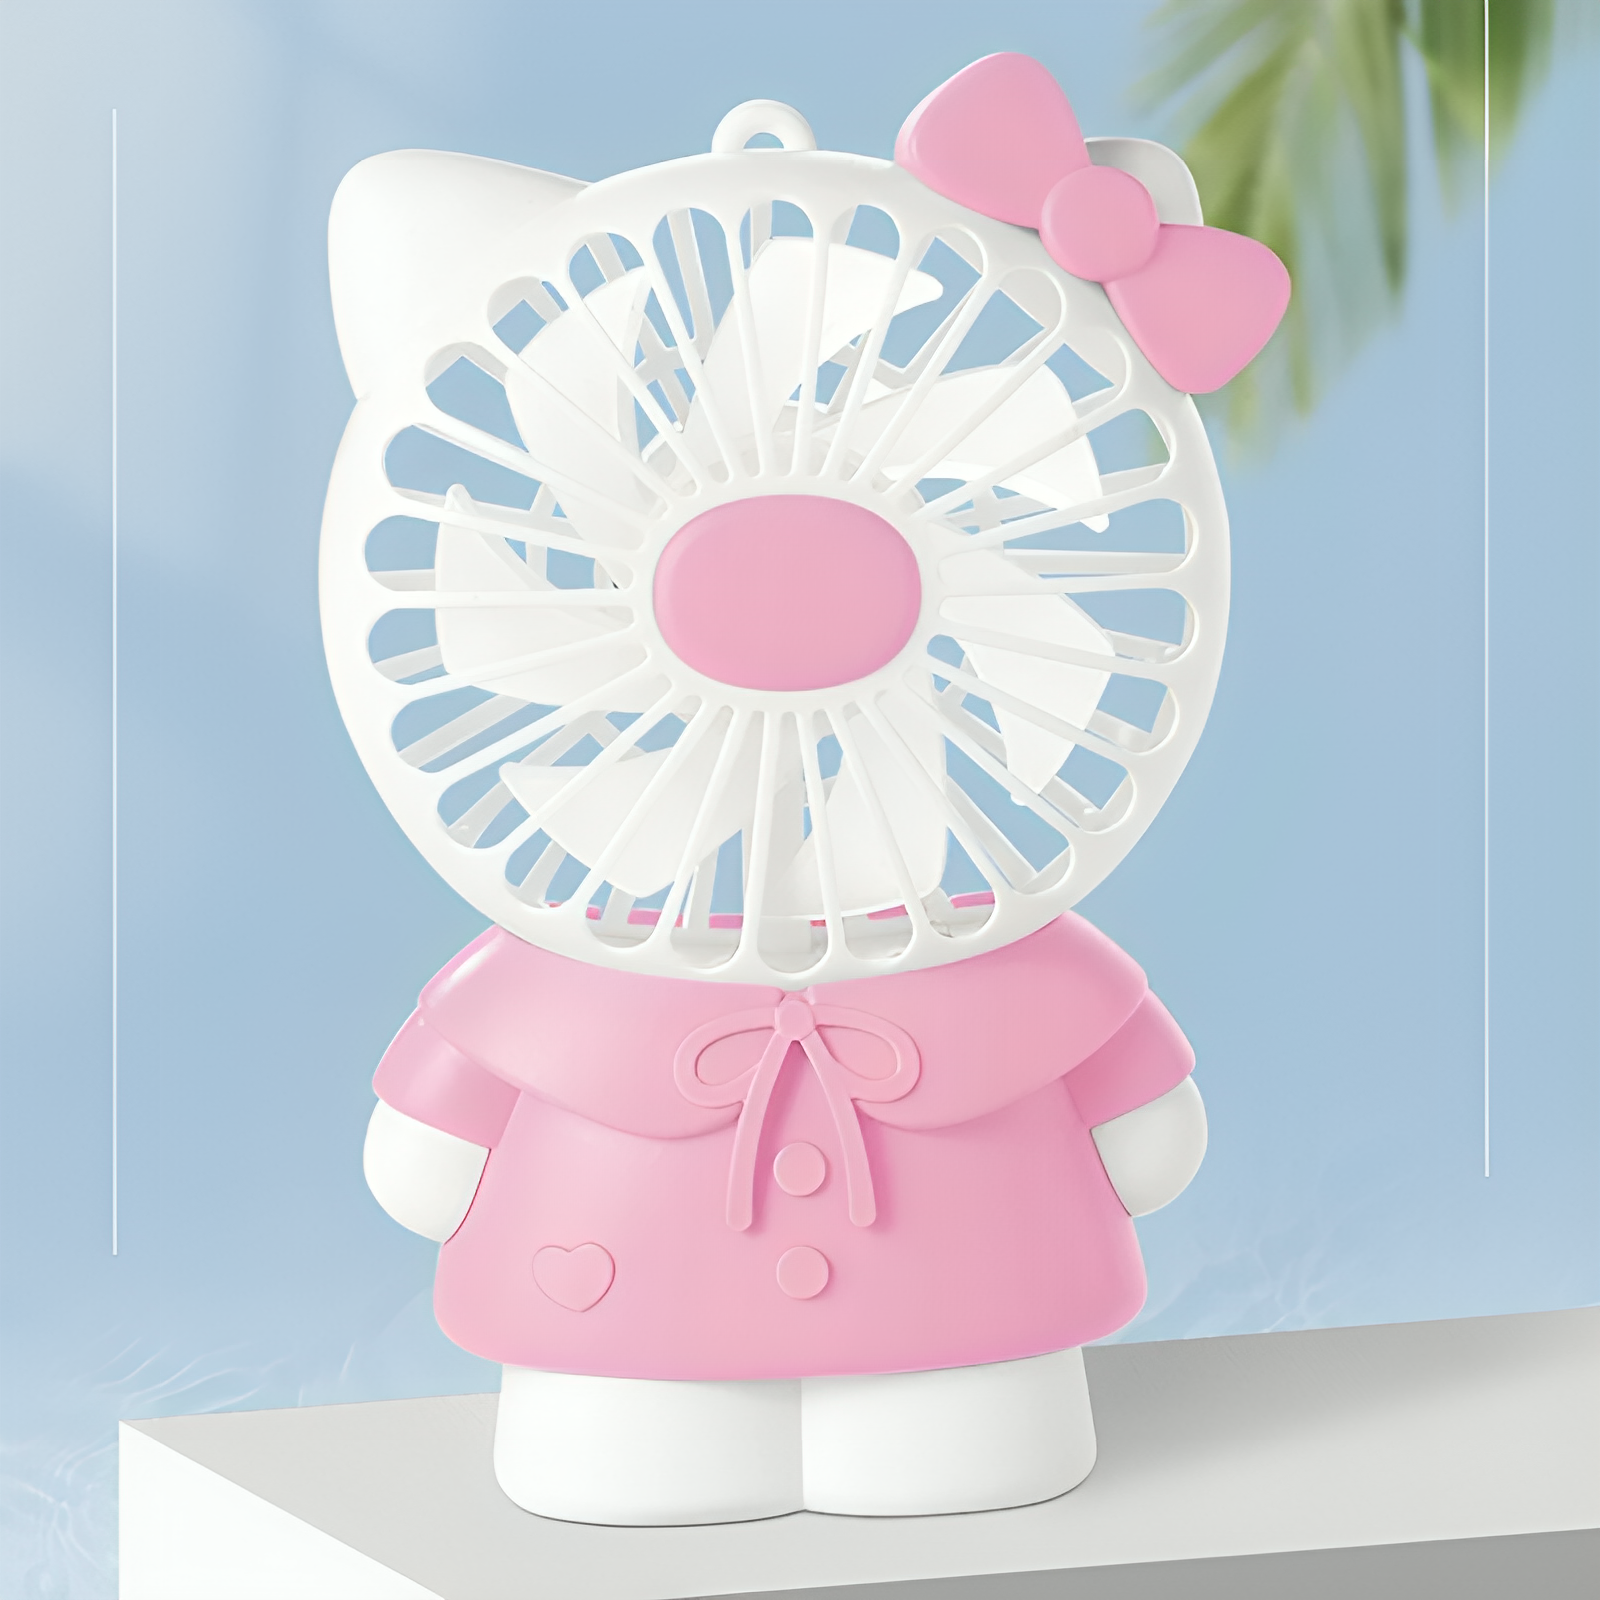 2. Hello Kitty Cute Rechargable Fan